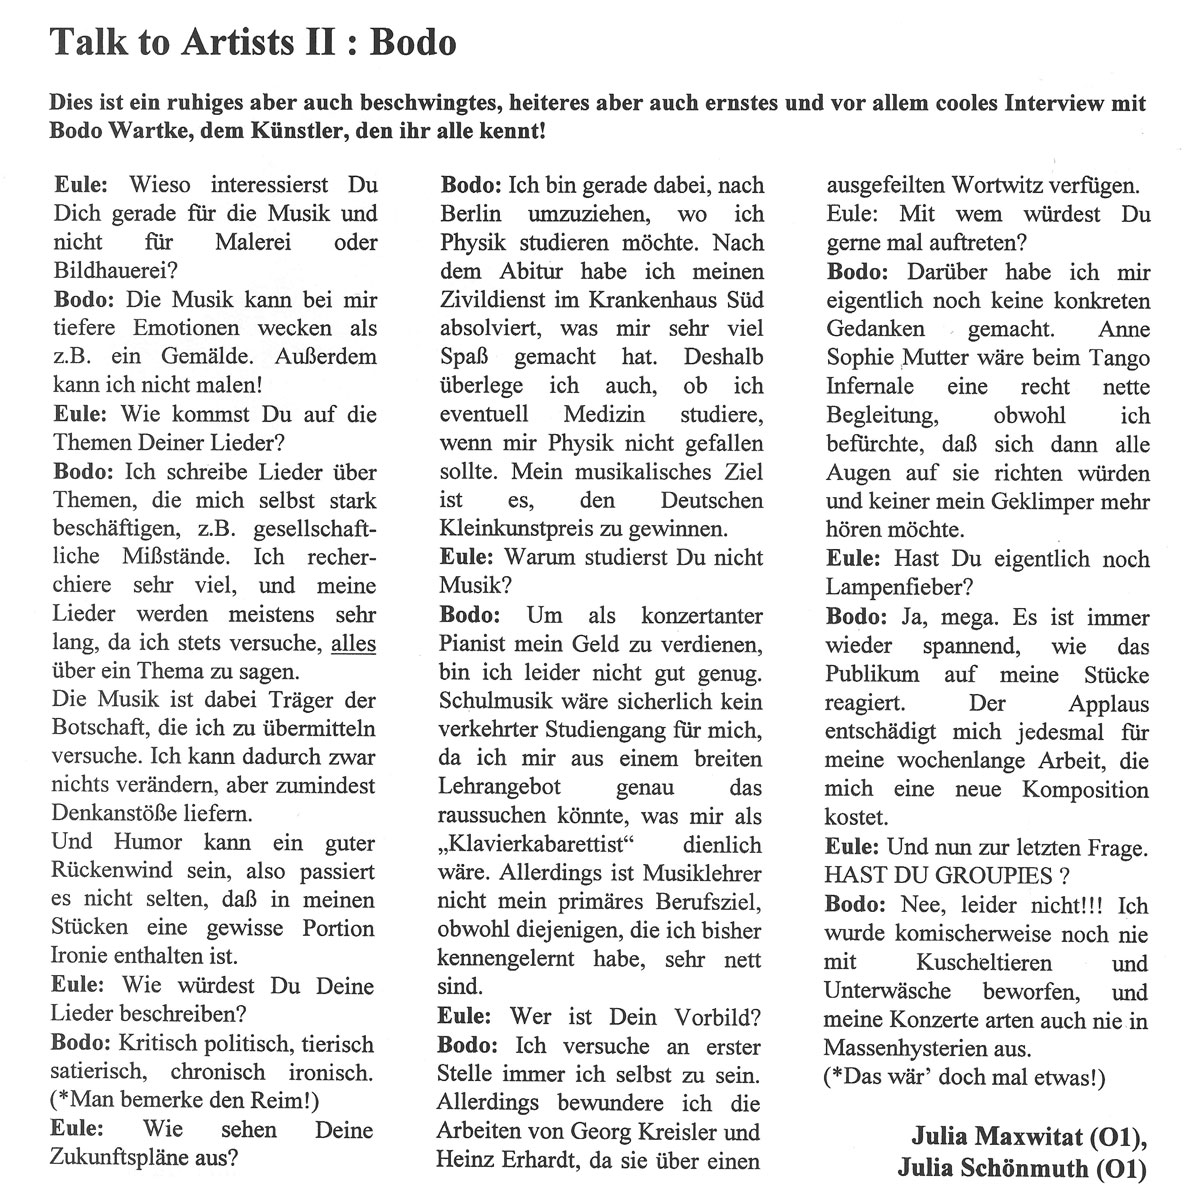 Die Eule Nr 57 (1997) - Talk To Artists - Bodo Wartke